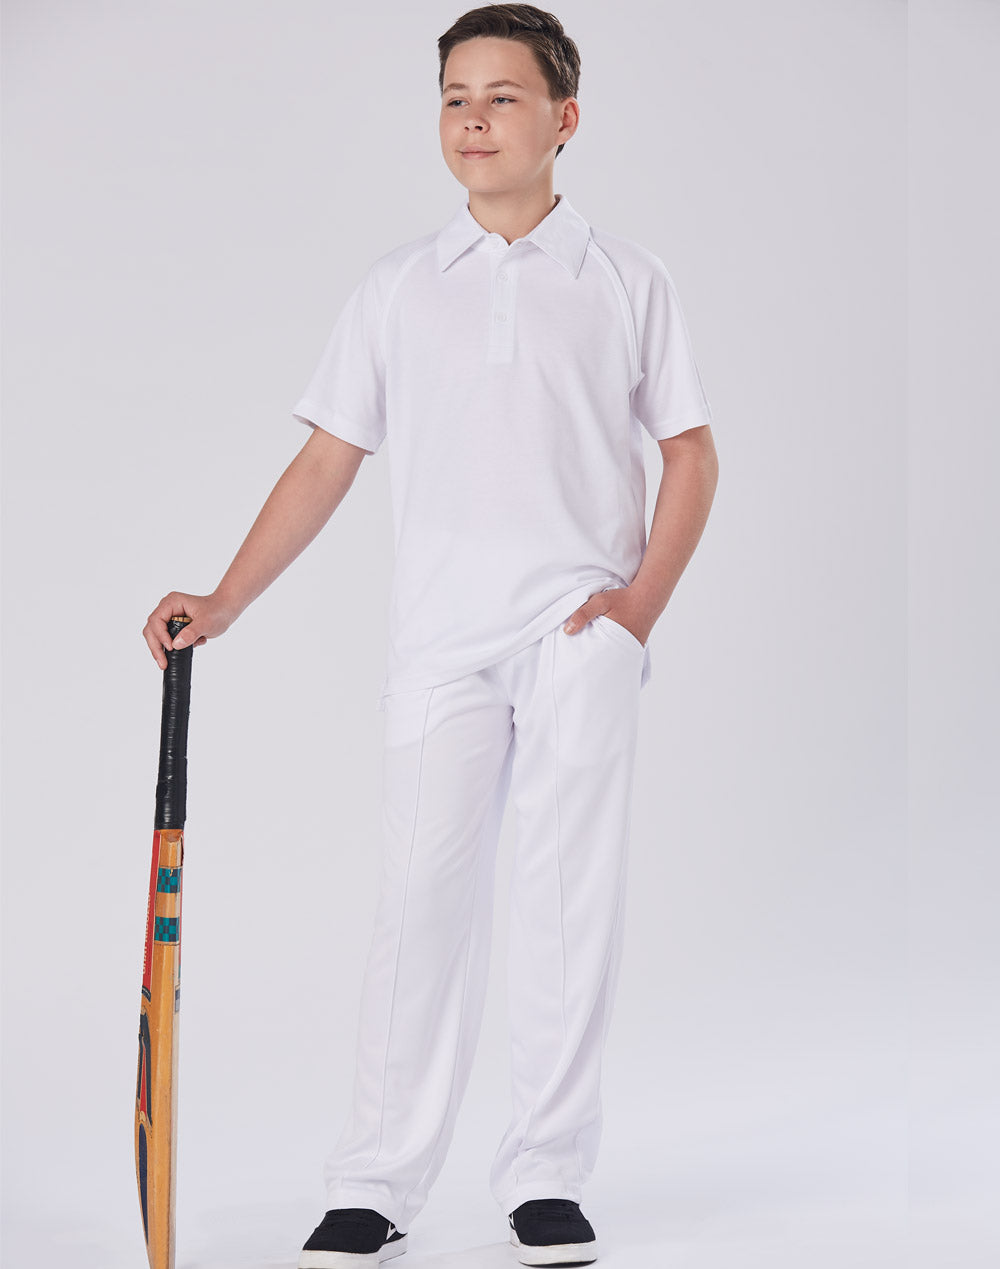 [CP29K] Kids cricket pants